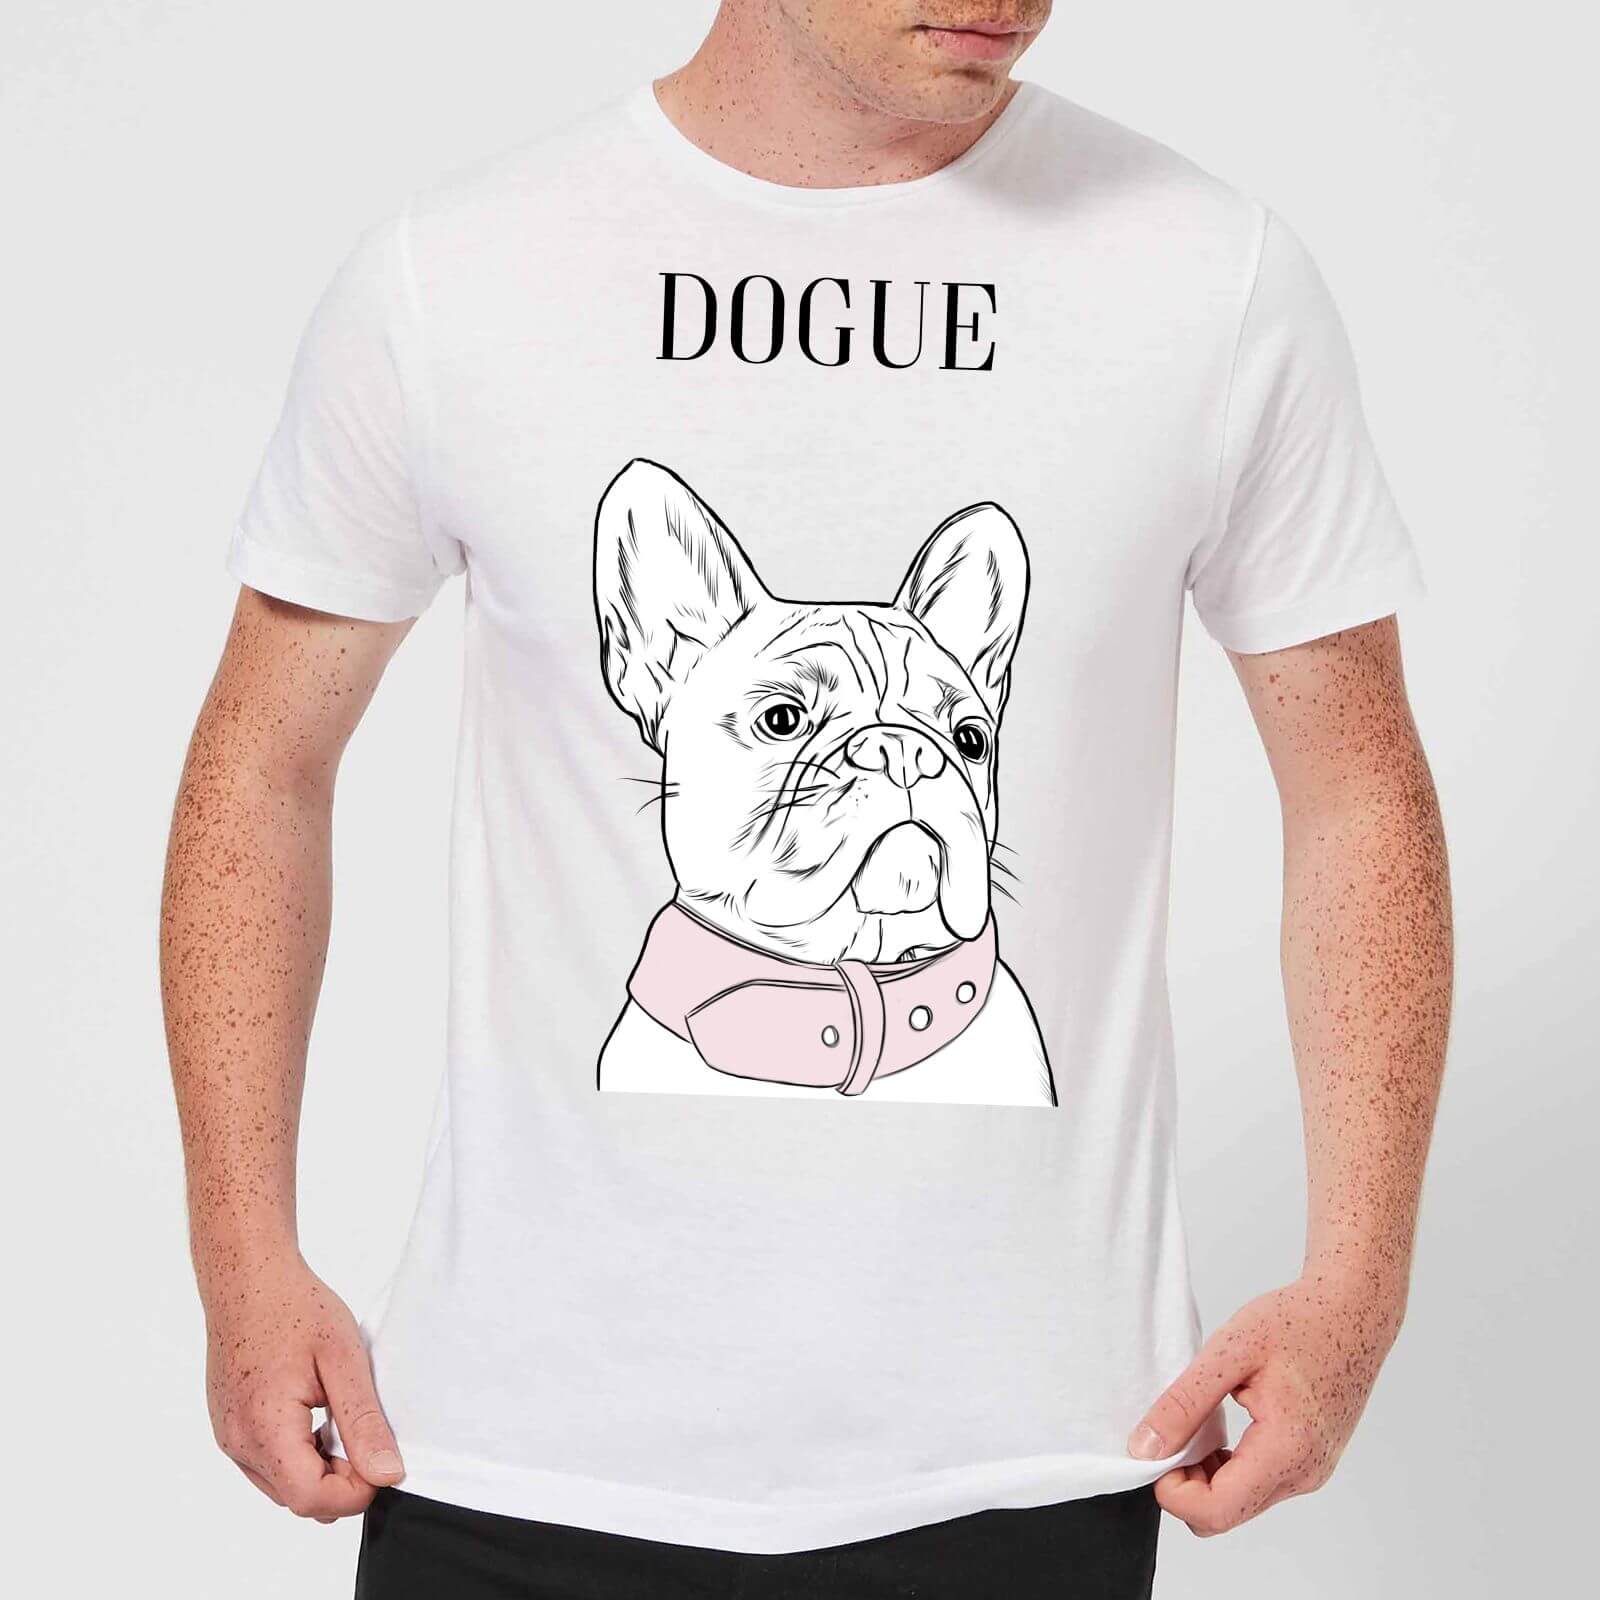 Dogue Men's T-Shirt - White - S - White